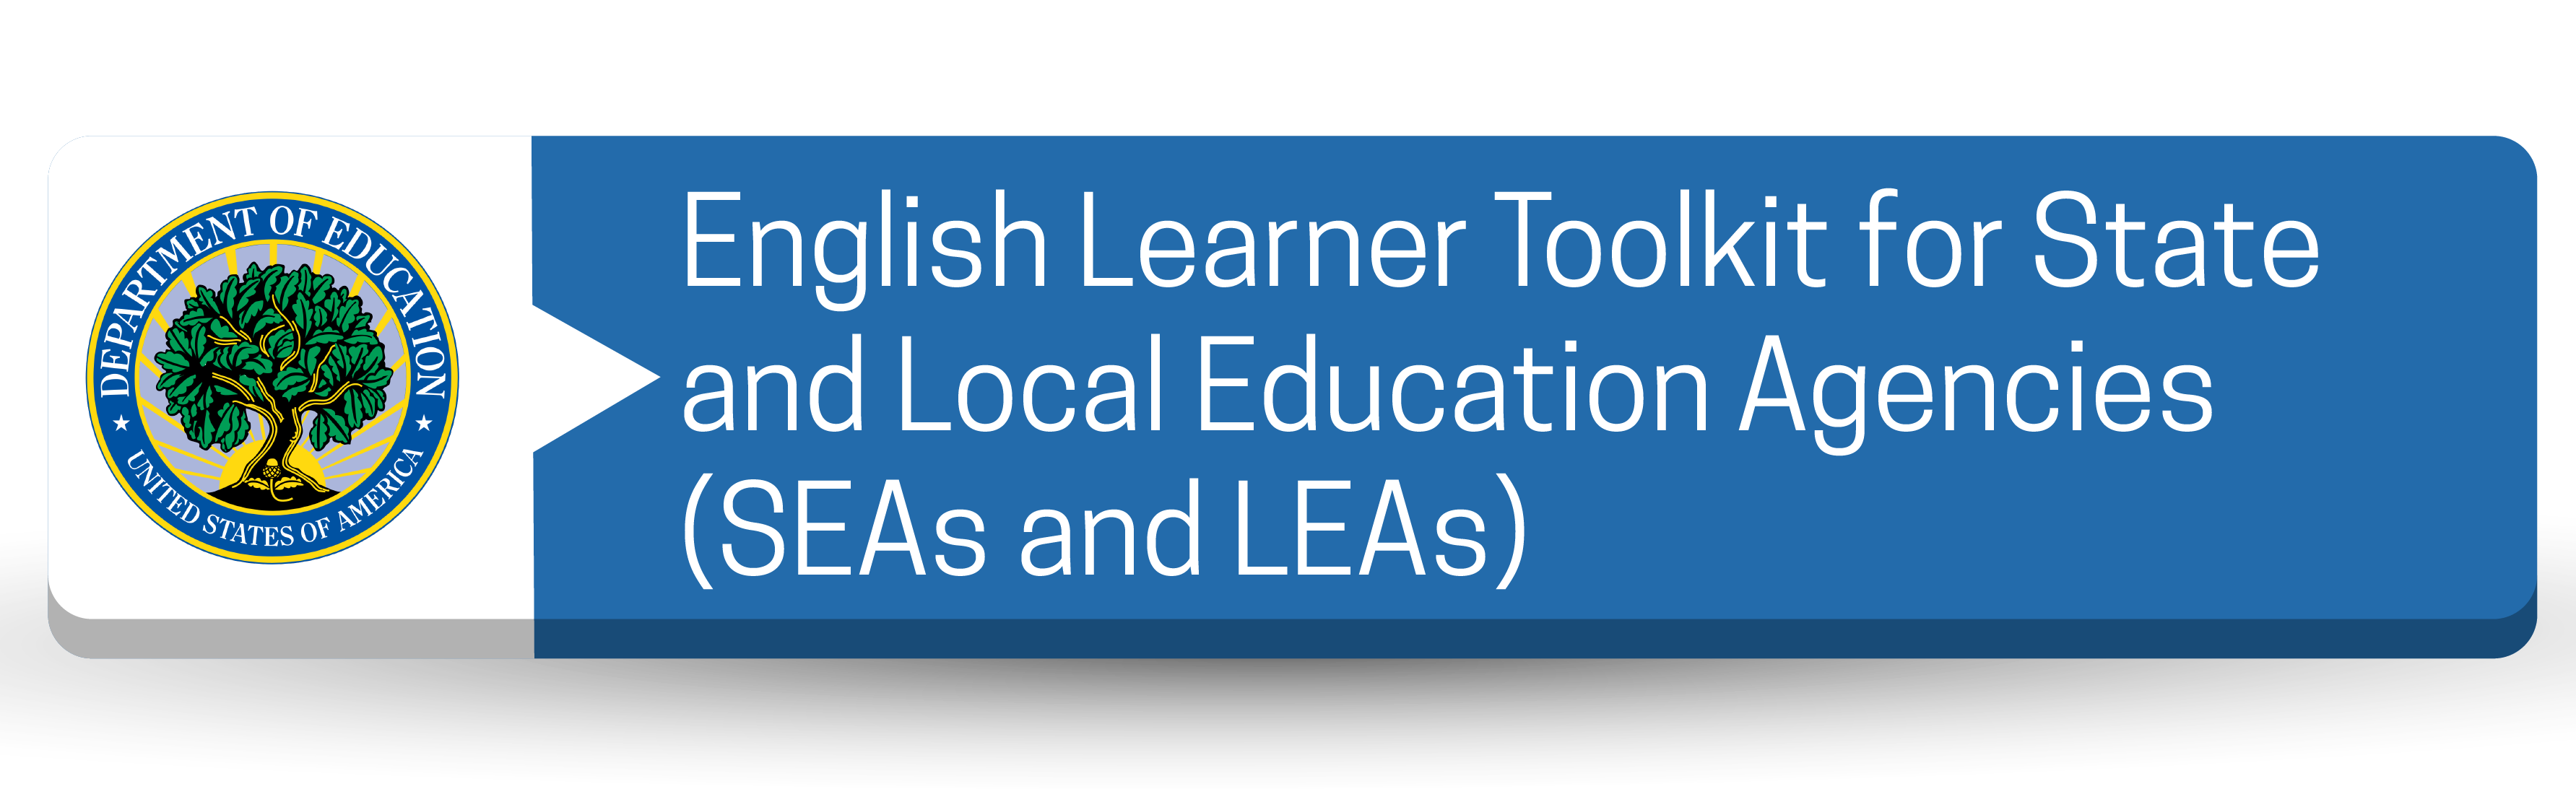 Kit de herramientas para estudiantes de inglés para agencias de educación estatales y locales (SEA y LEA) Botón